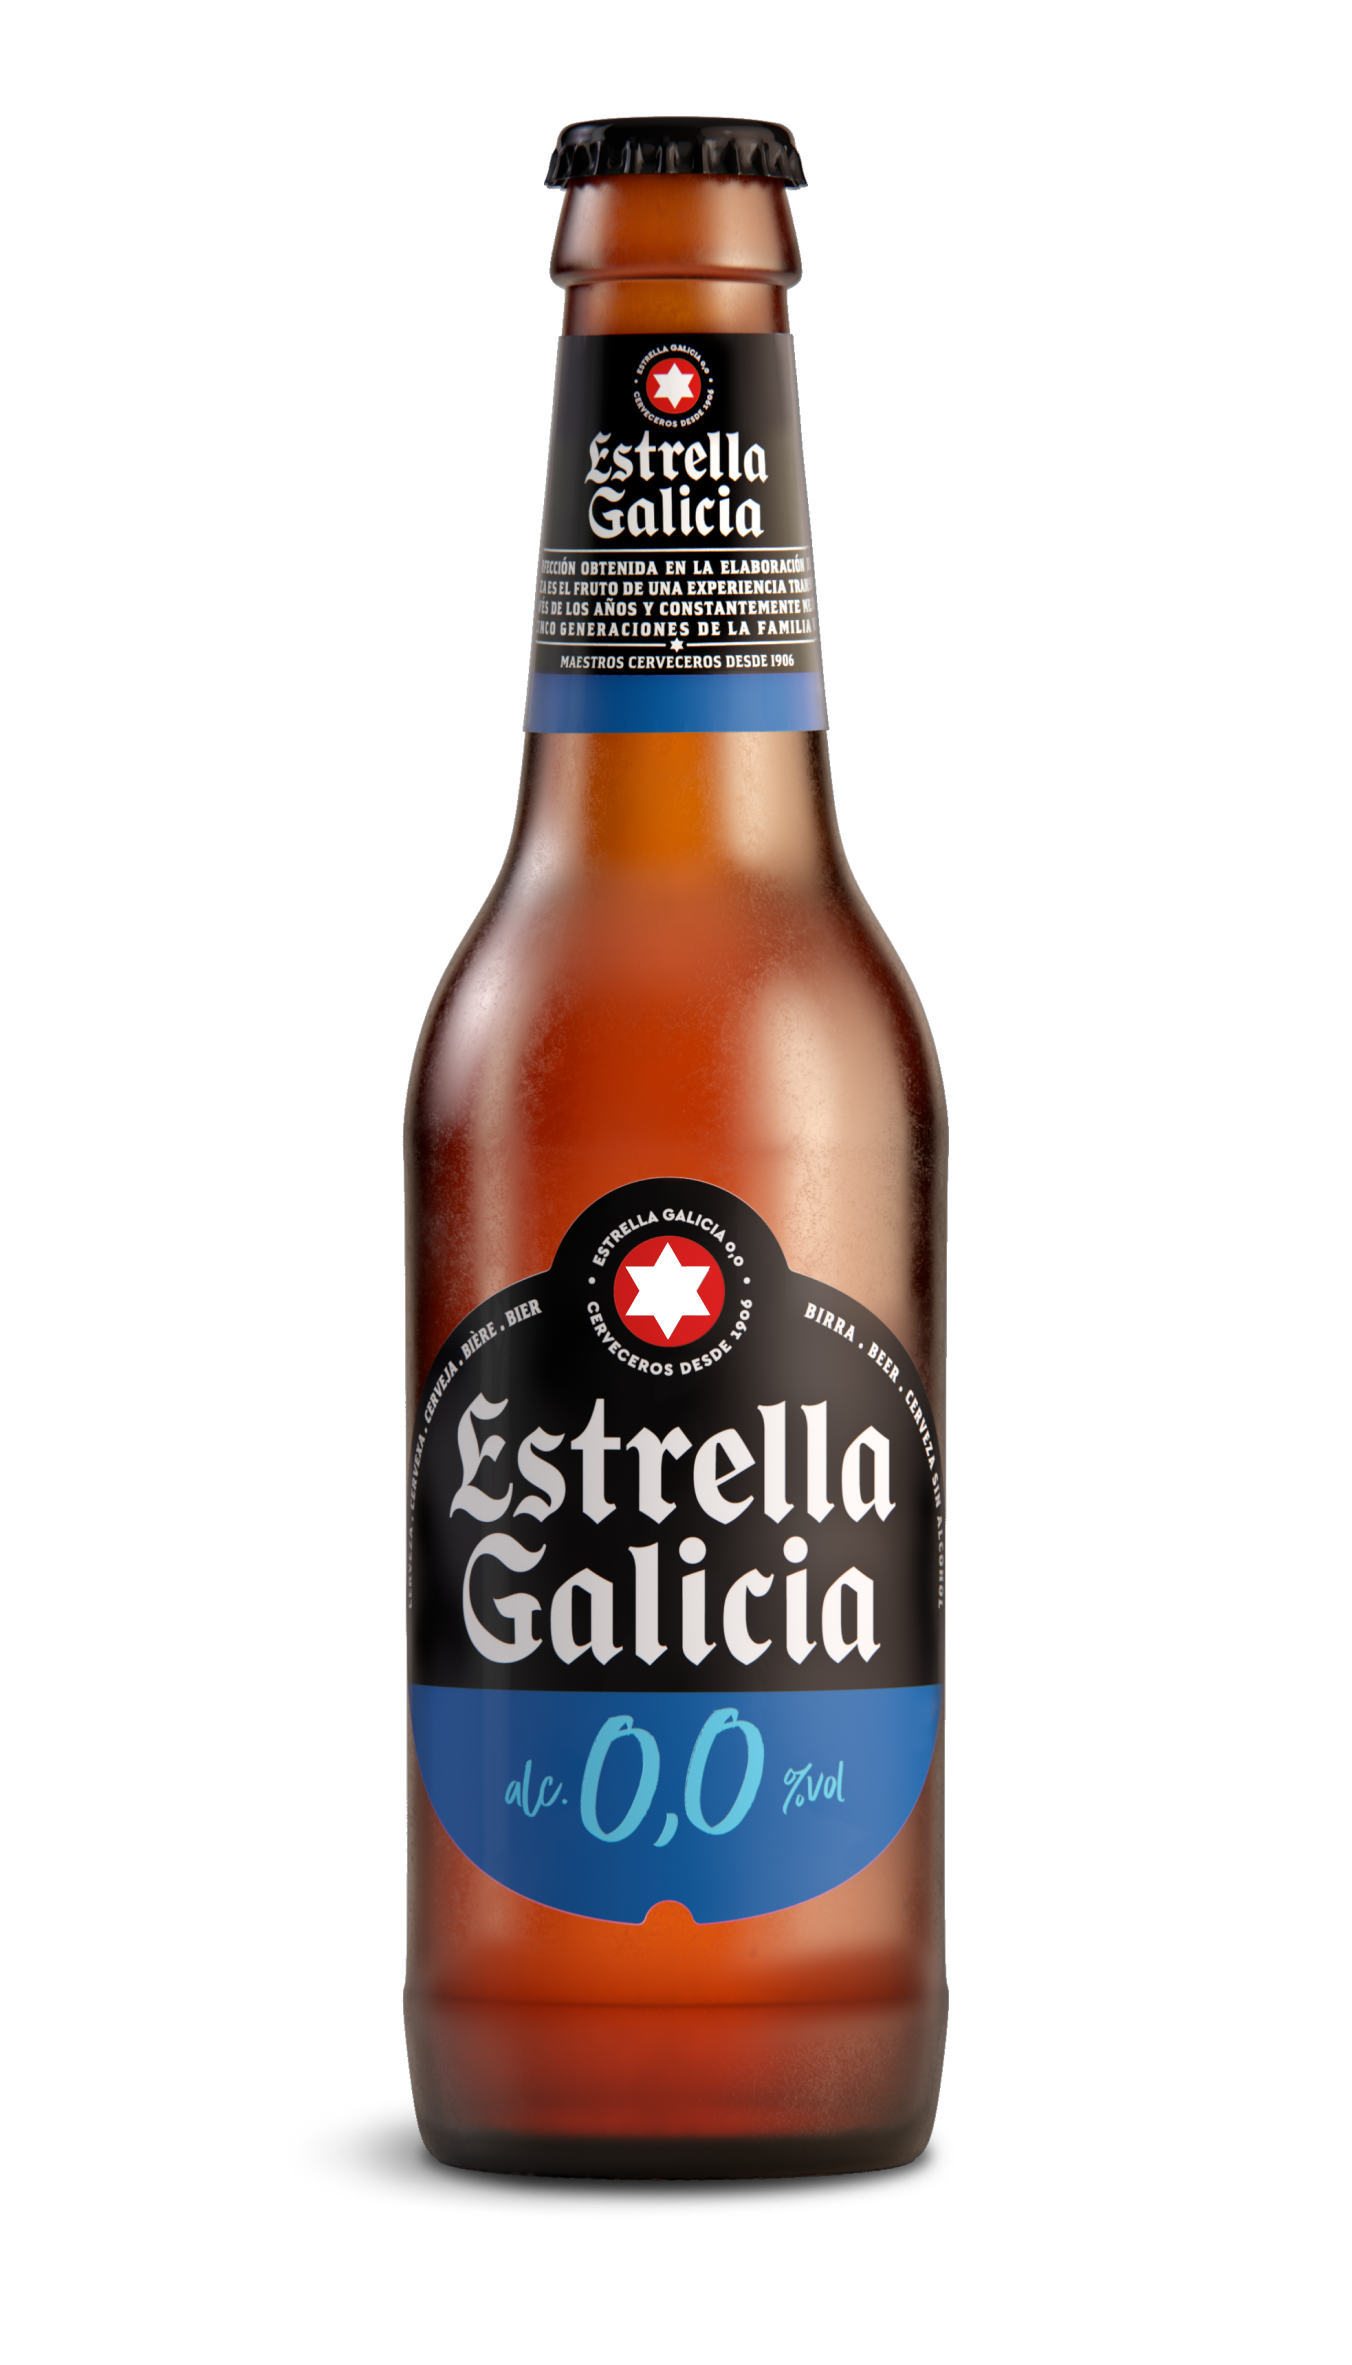 Estrella Galicia 00